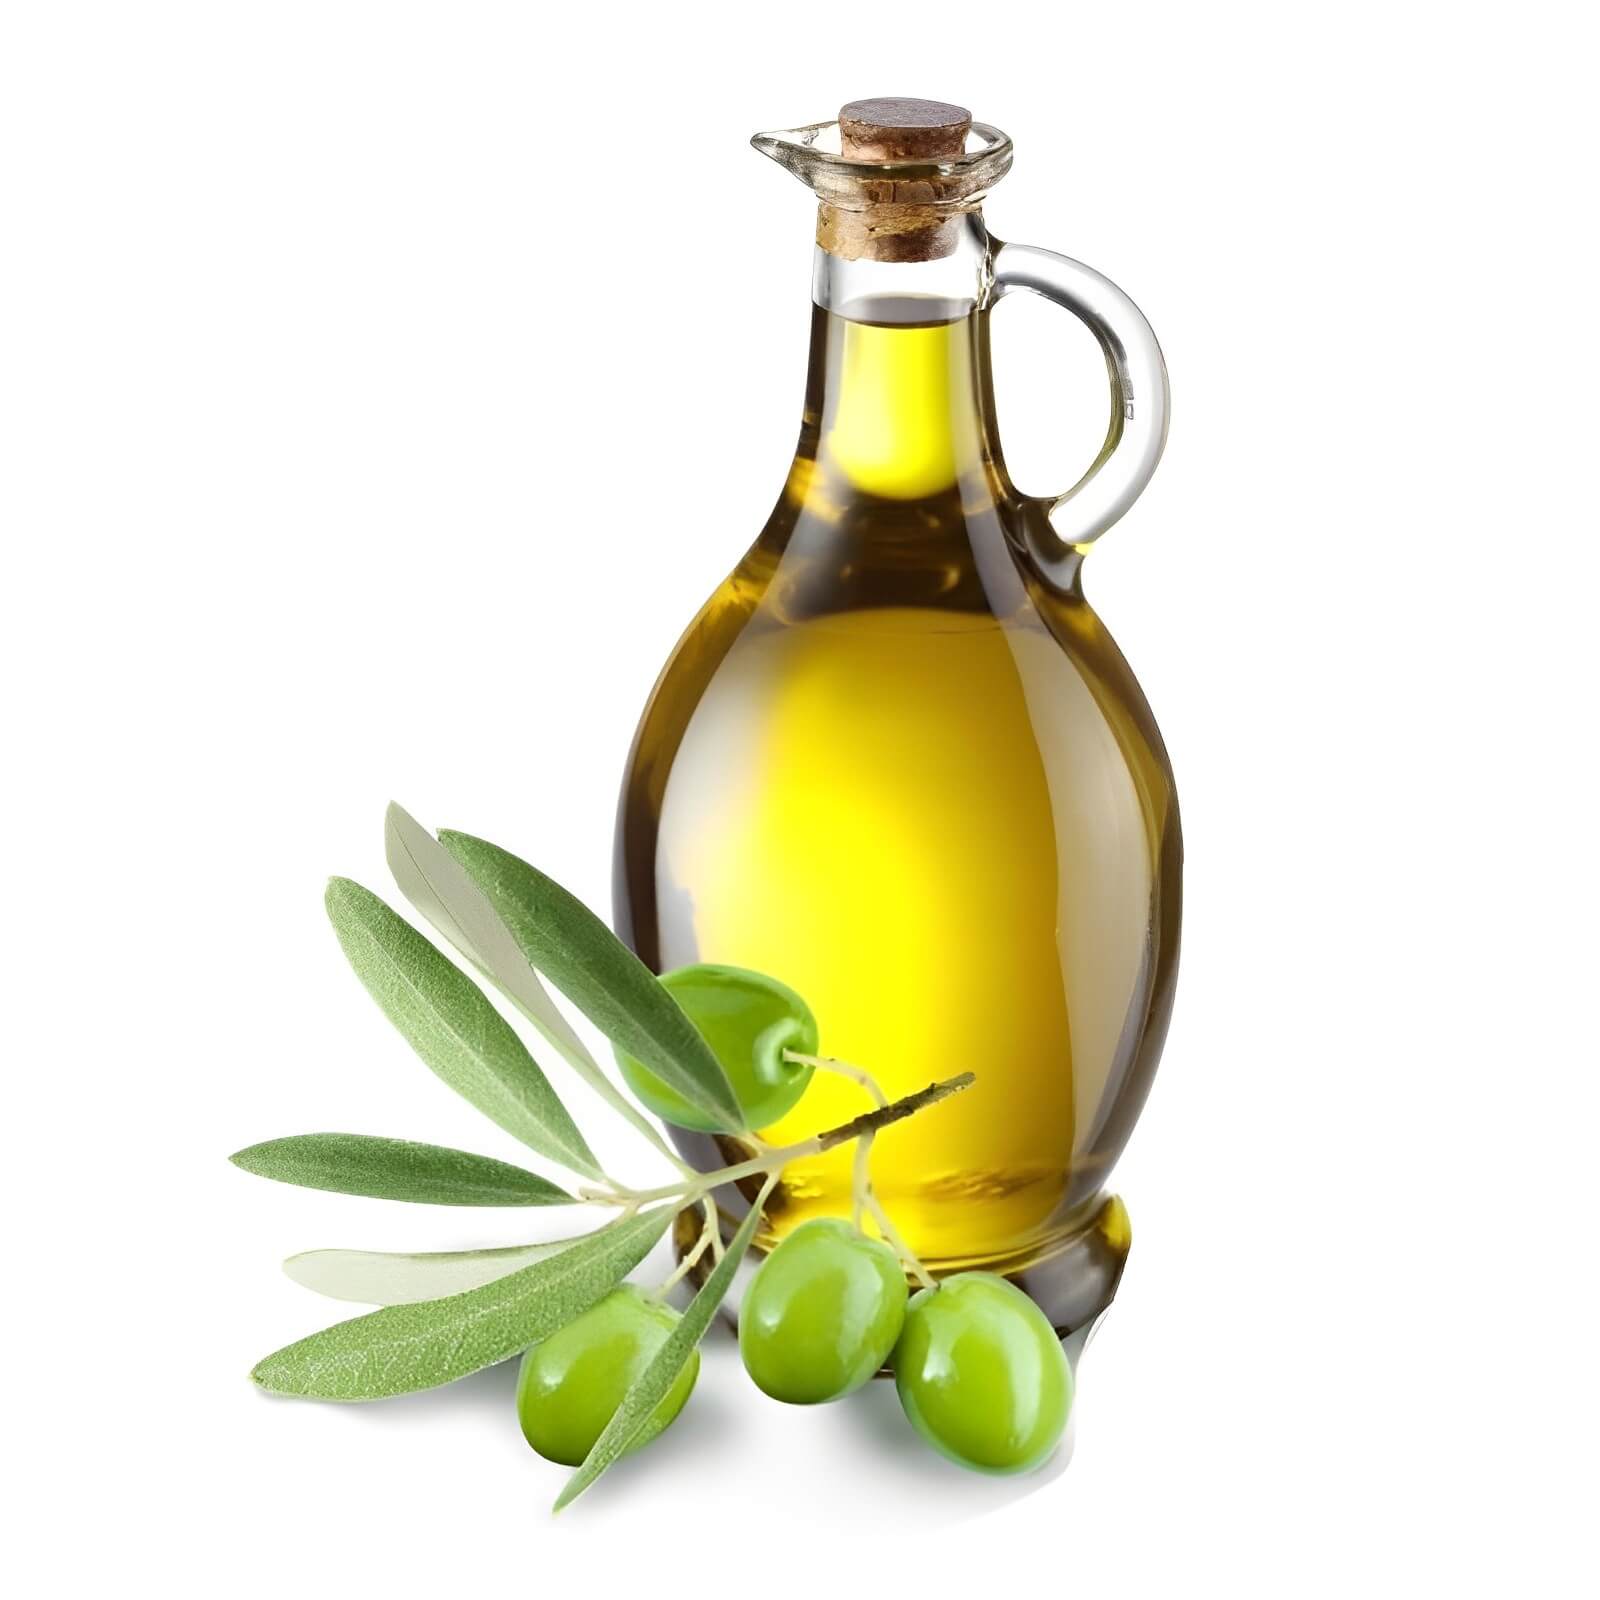 olio di oliva sicilia